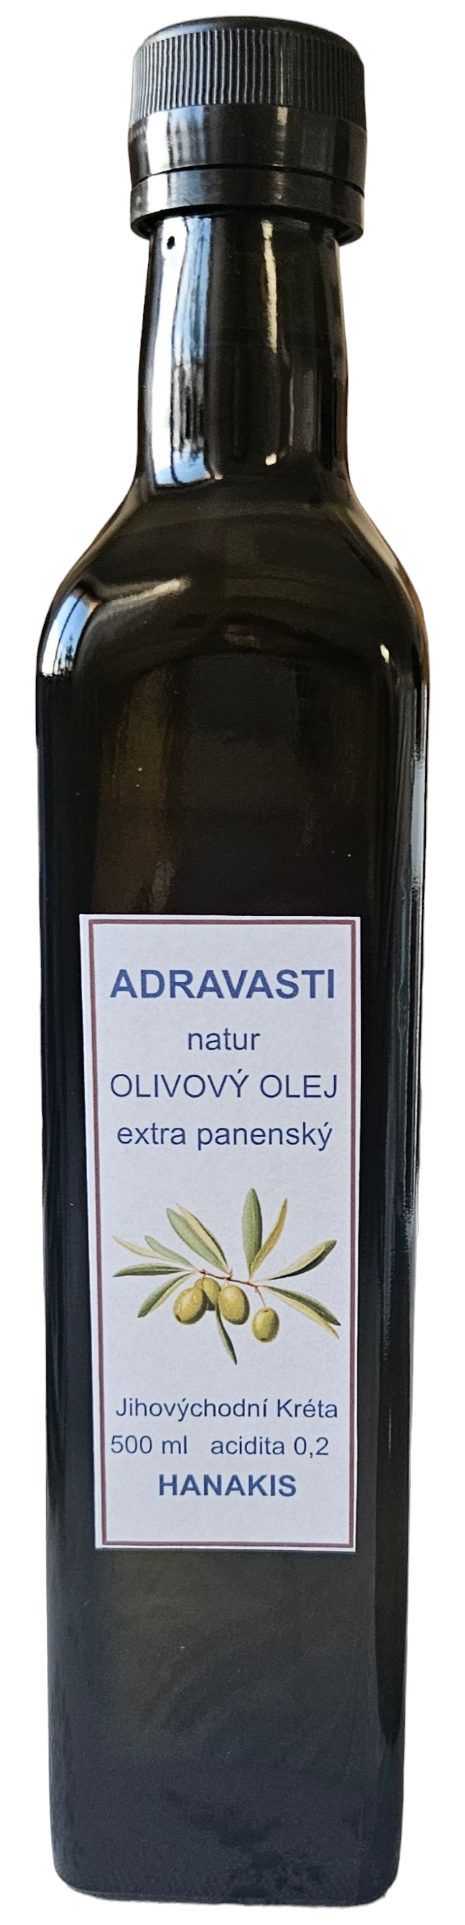 Olivový olej extra panenský v bio kvalitě 500 ml